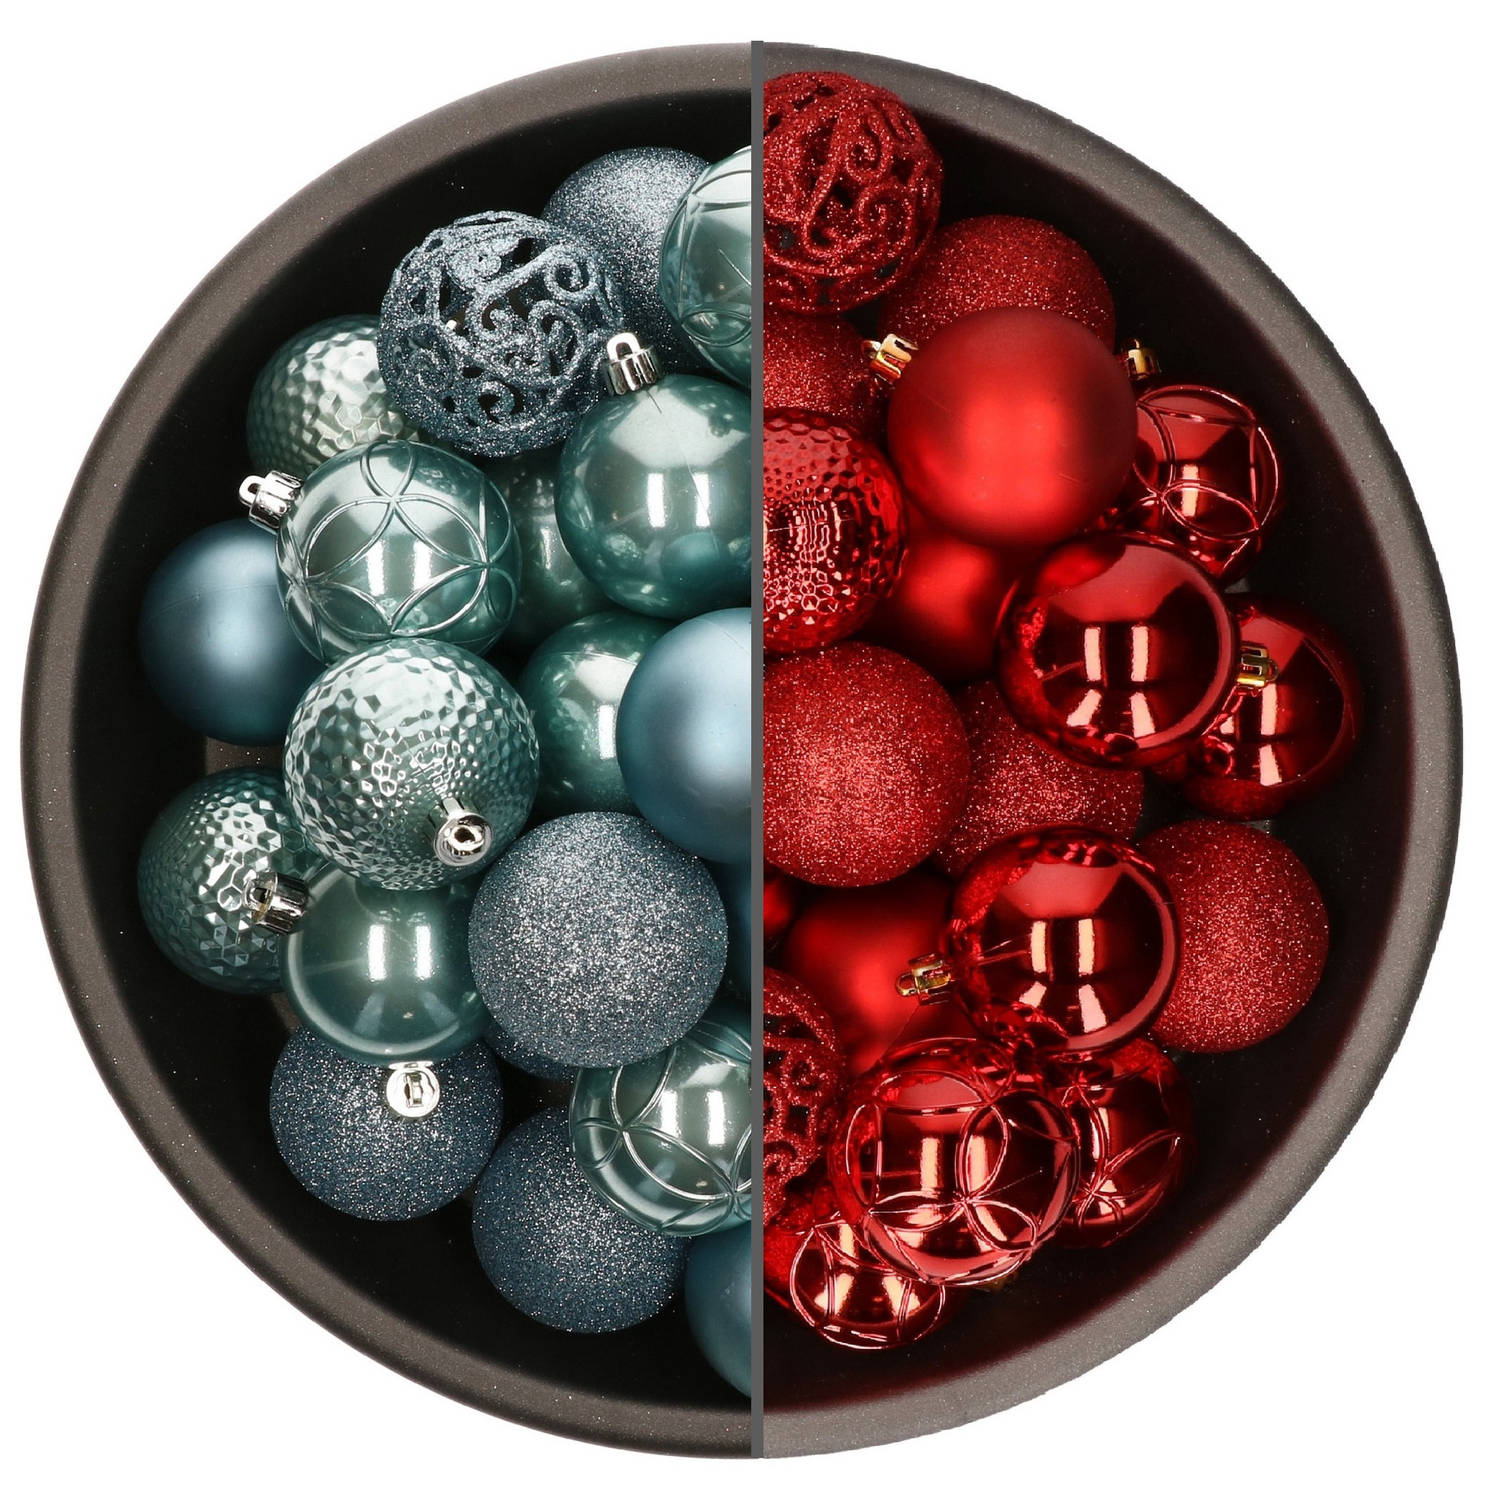 74x stuks kunststof kerstballen mix van rood en ijsblauw 6 cm - Kerstbal